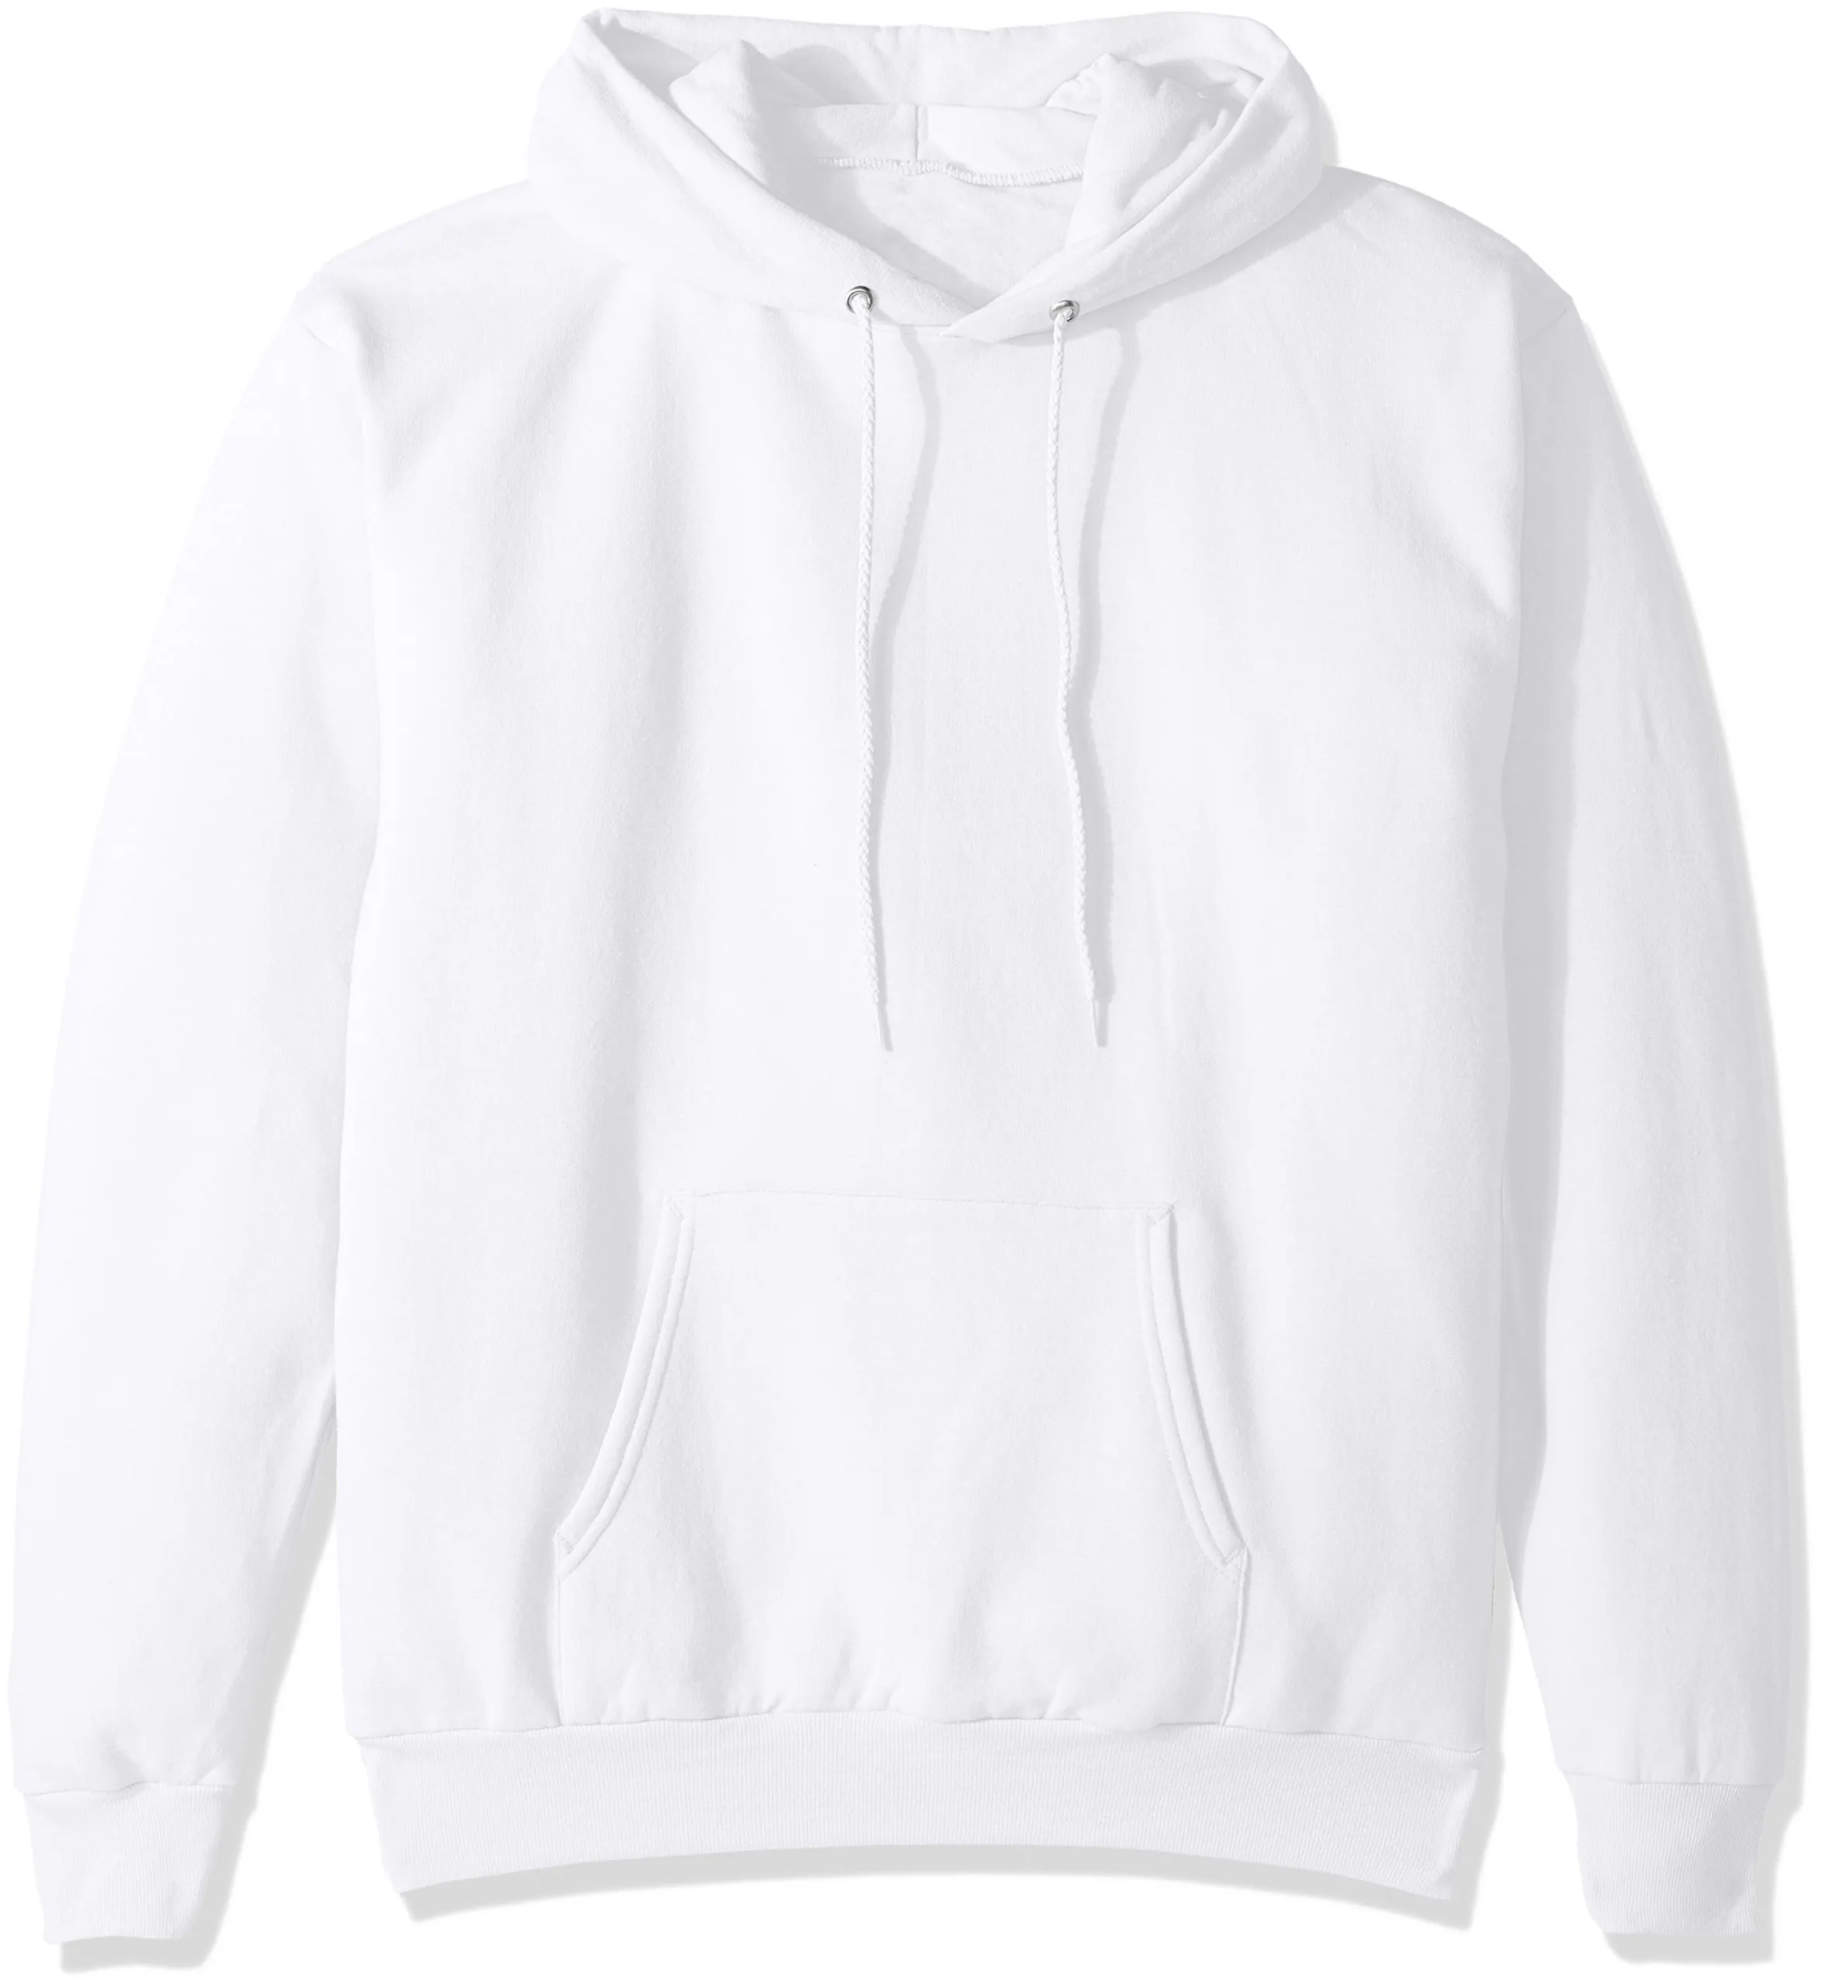 OEM mens white Hoodie 100% Cotton Long Sleeve custom mens plain pullover hoodies